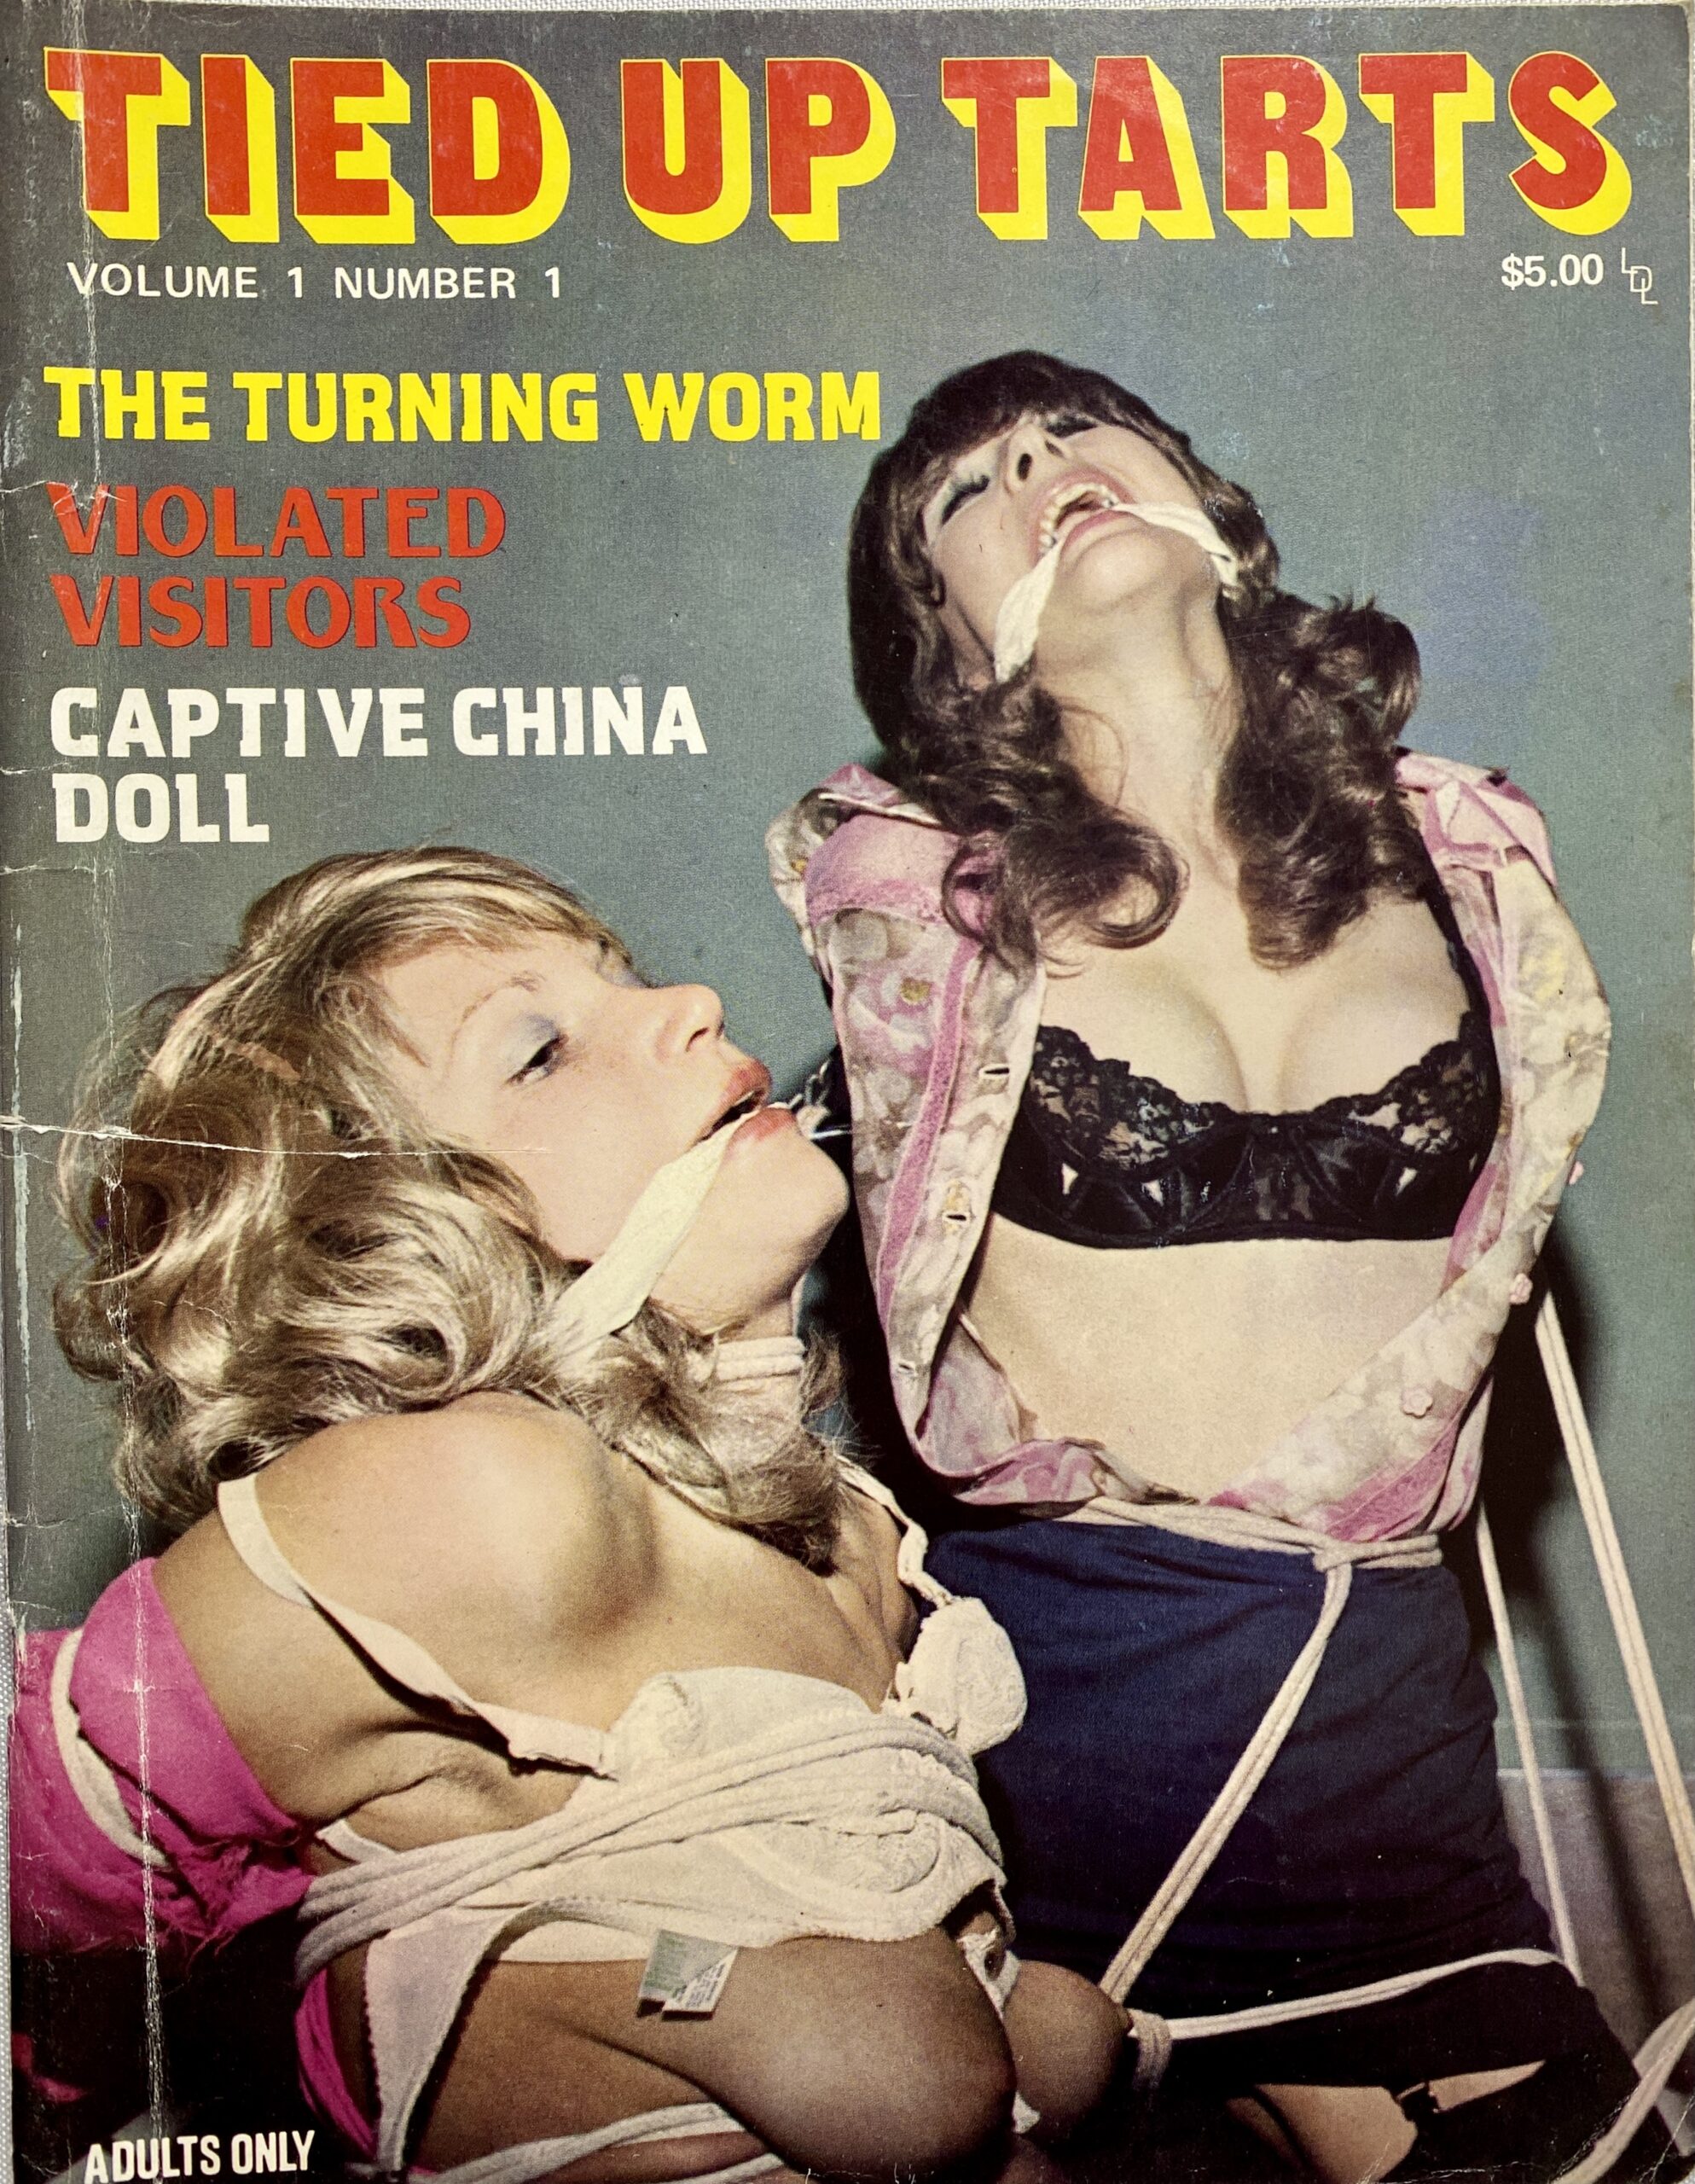 Vintage Bondage Magazine Covers - Retro Bondage Magazine Ads | BDSM Fetish